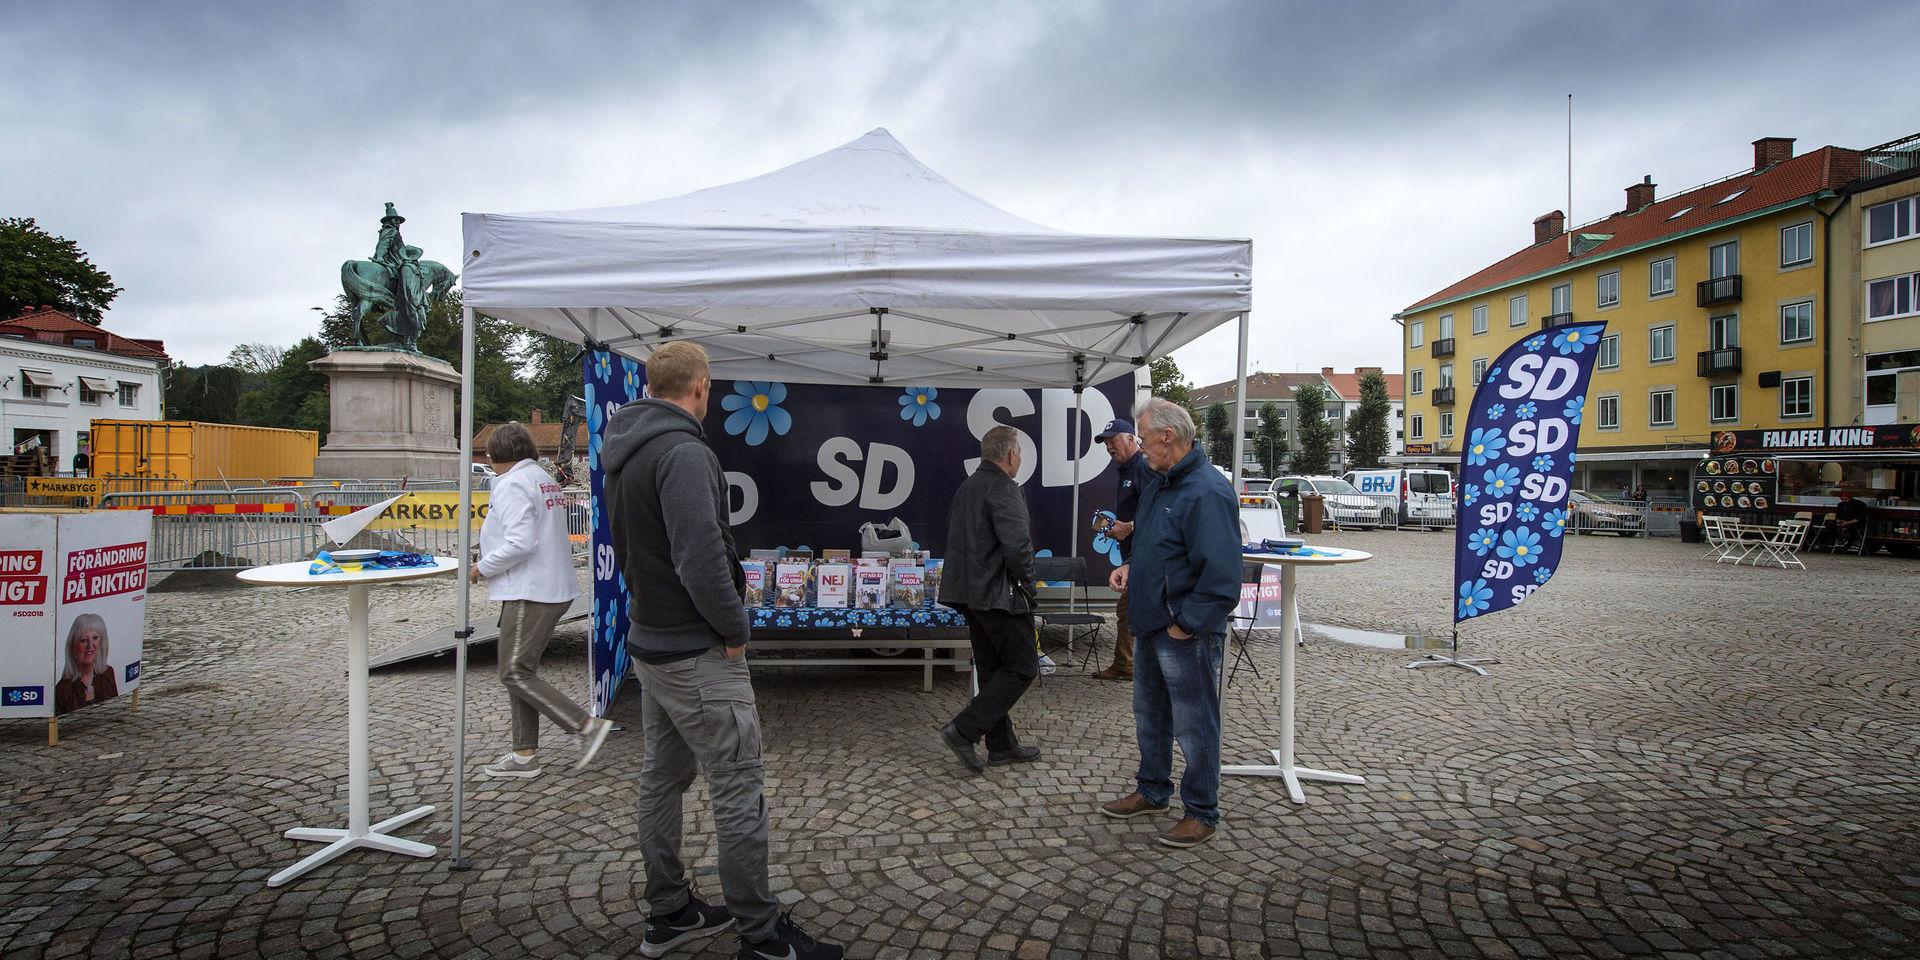 Valstugor
Sverige Demokraterna
SD